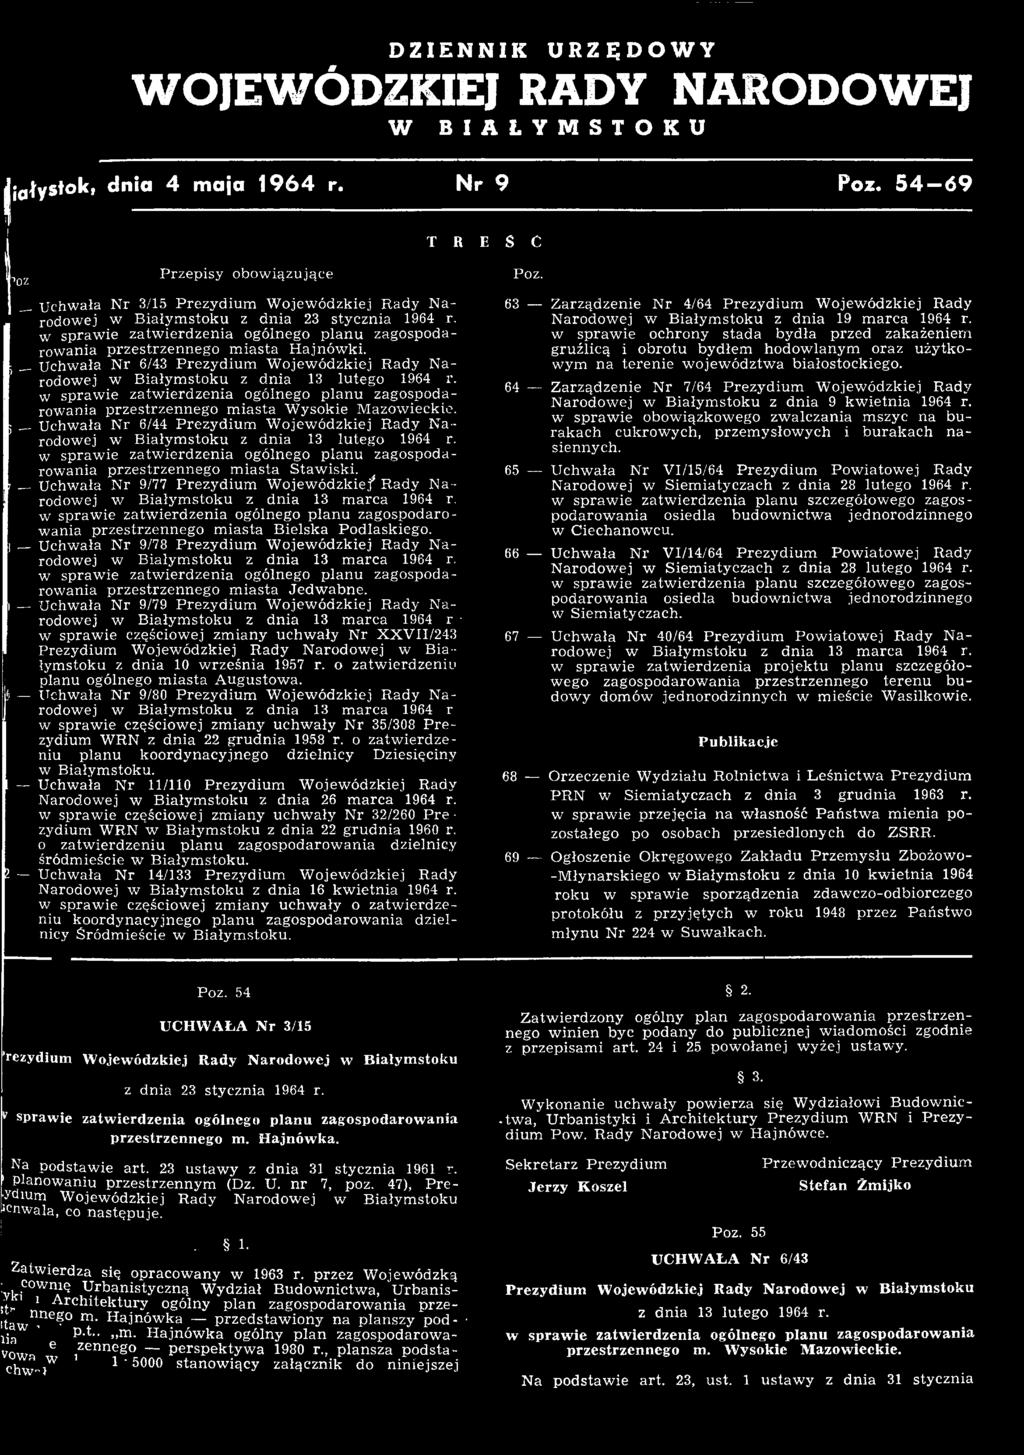 1 Uchwała Nr 9/77 Prezydium Wojewódzkie/ Rady Narodowej w Białymstoku z dnia 13 marca 1964 r, przestrzennego miasta Bielska Podlaskiego, i Uchwała Nr 9/78 Prezydium Wojewódzkiej Rady Narodowej w